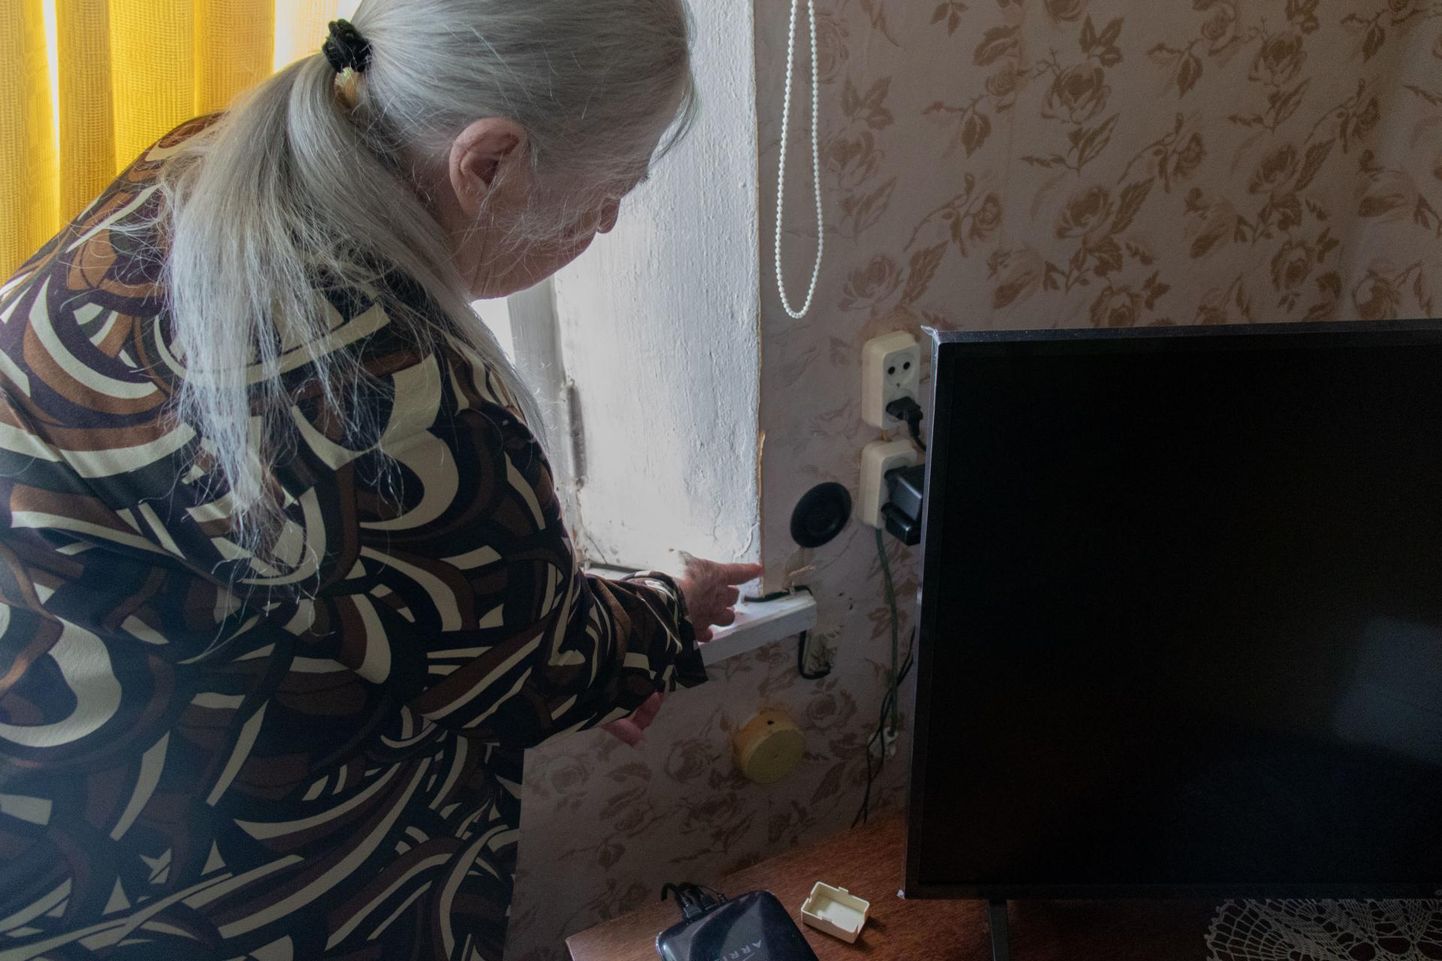 Leevil elav 88-aastane Hilja Karakatš näitas, et keravälk oli tüki tapeeti lahti löönud. Samuti oli lendu läinud sidekaabli karbi kaas.